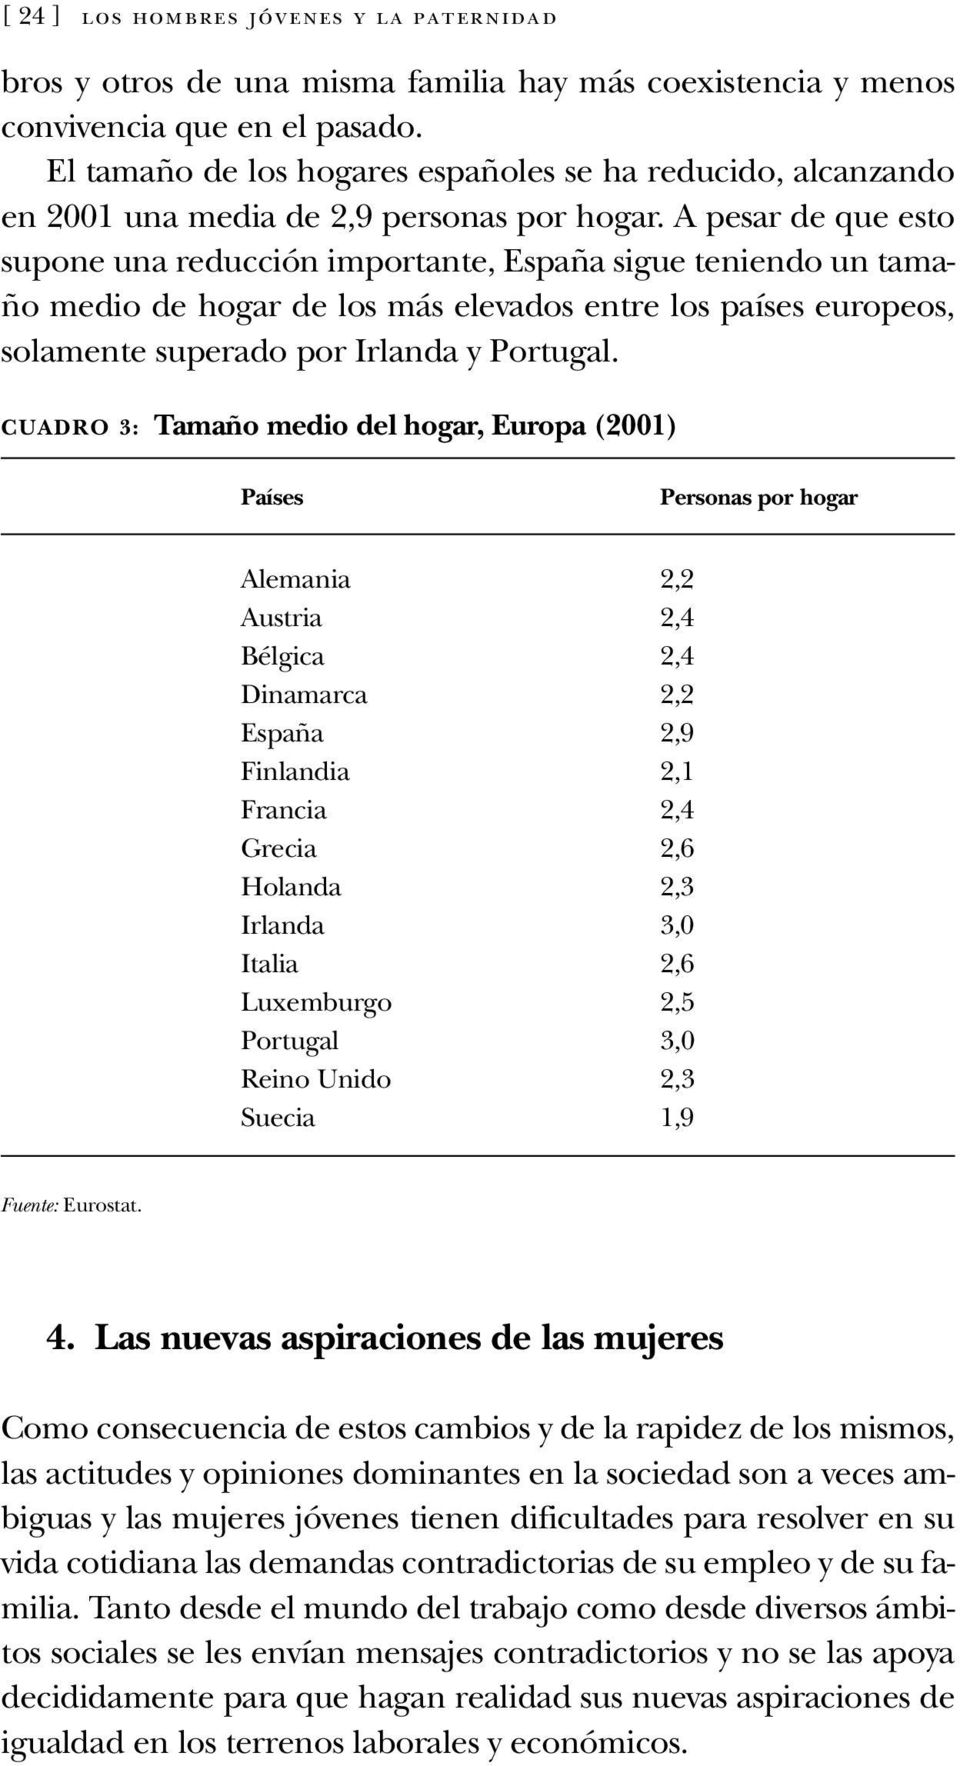 A pesar de que esto supone una reducción importante, España sigue teniendo un tamaño medio de hogar de los más elevados entre los países europeos, solamente superado por Irlanda y Portugal.